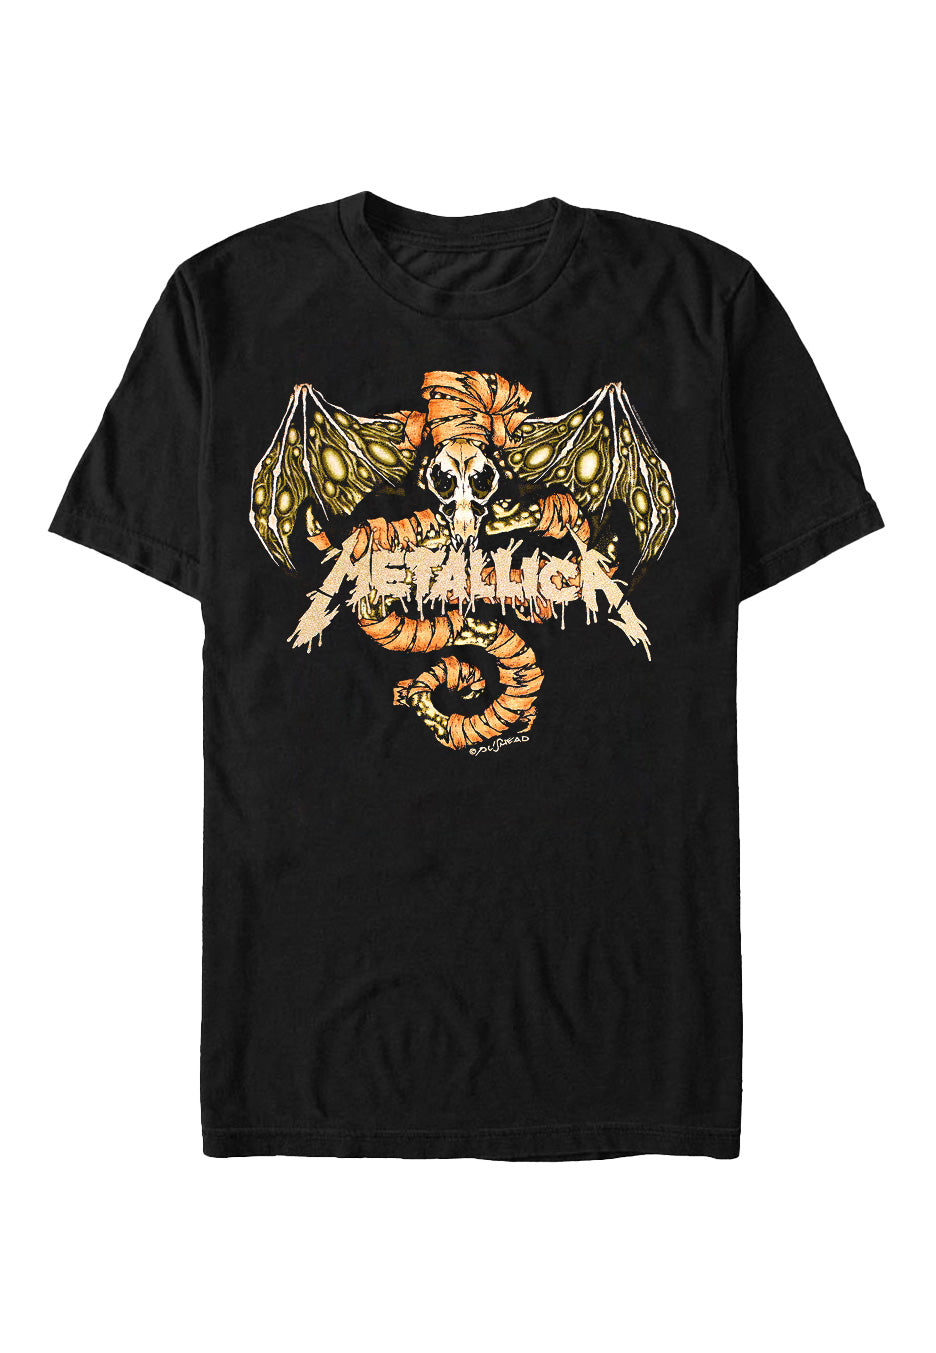 Metallica - Wherever Original - T-Shirt